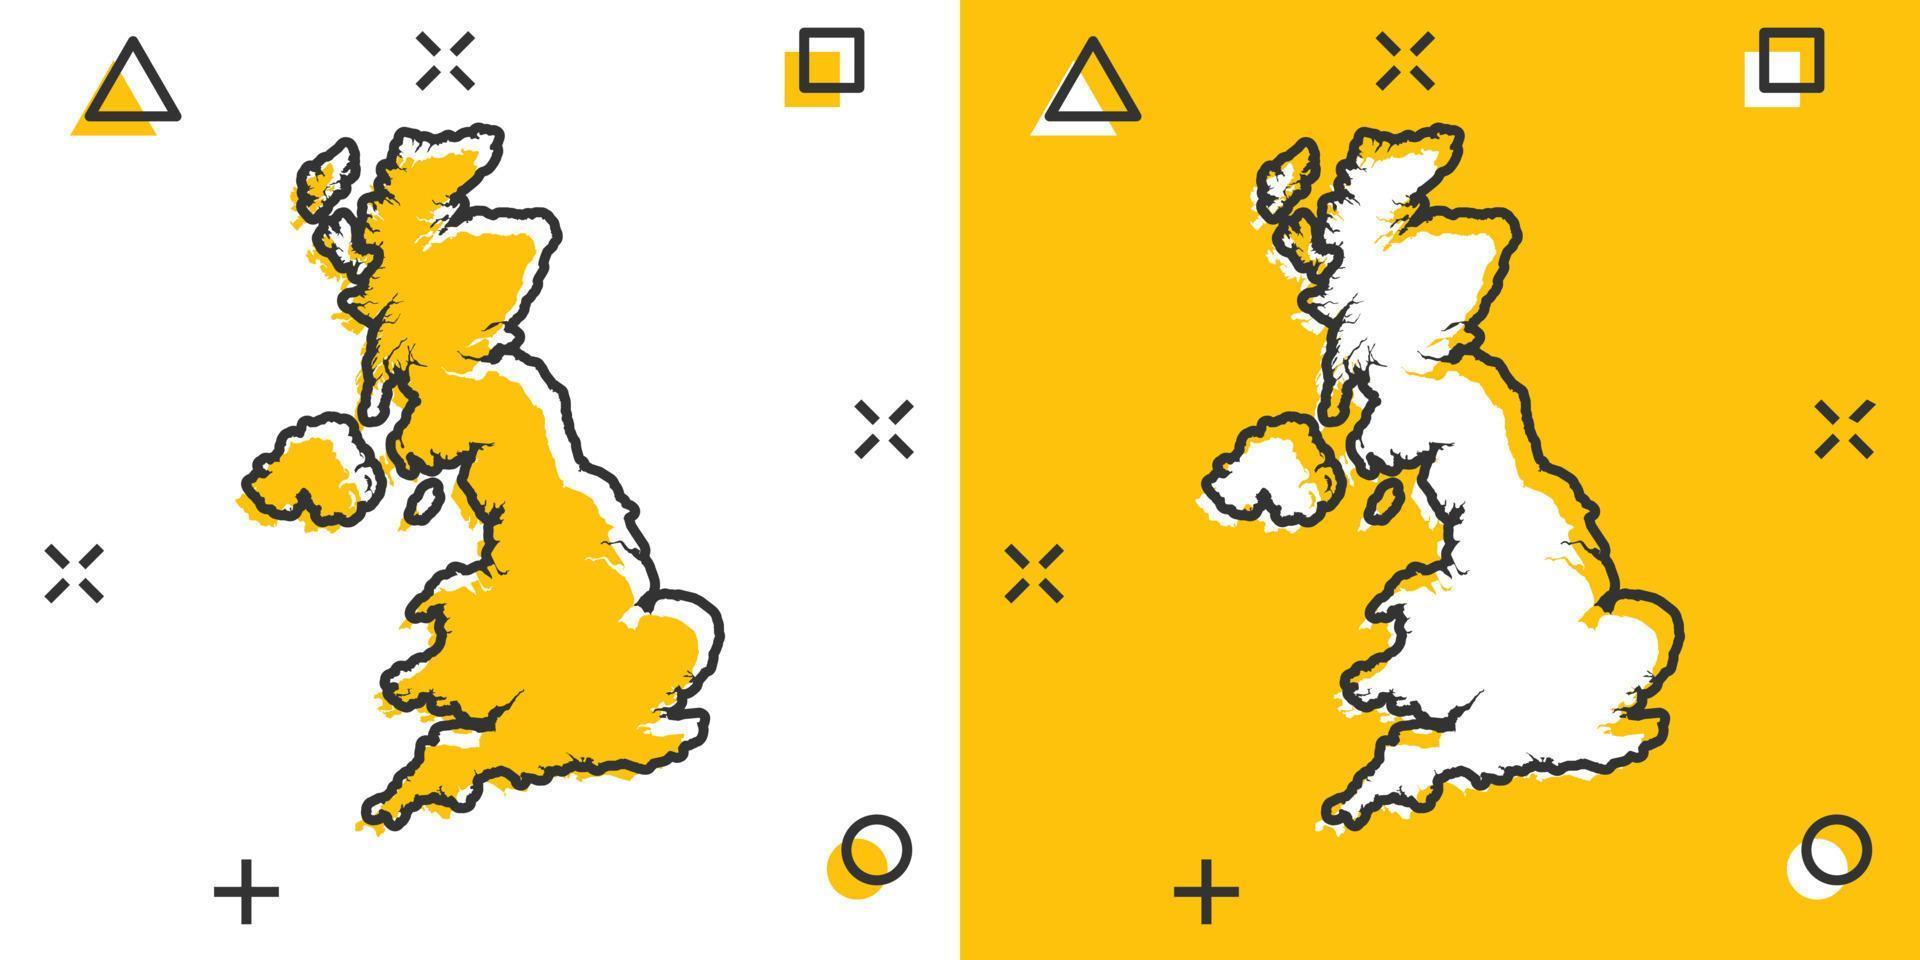 Vektor-Cartoon-Großbritannien-Kartensymbol im Comic-Stil. großbritannien zeichen illustration piktogramm. Kartografie-Karten-Business-Splash-Effekt-Konzept. vektor